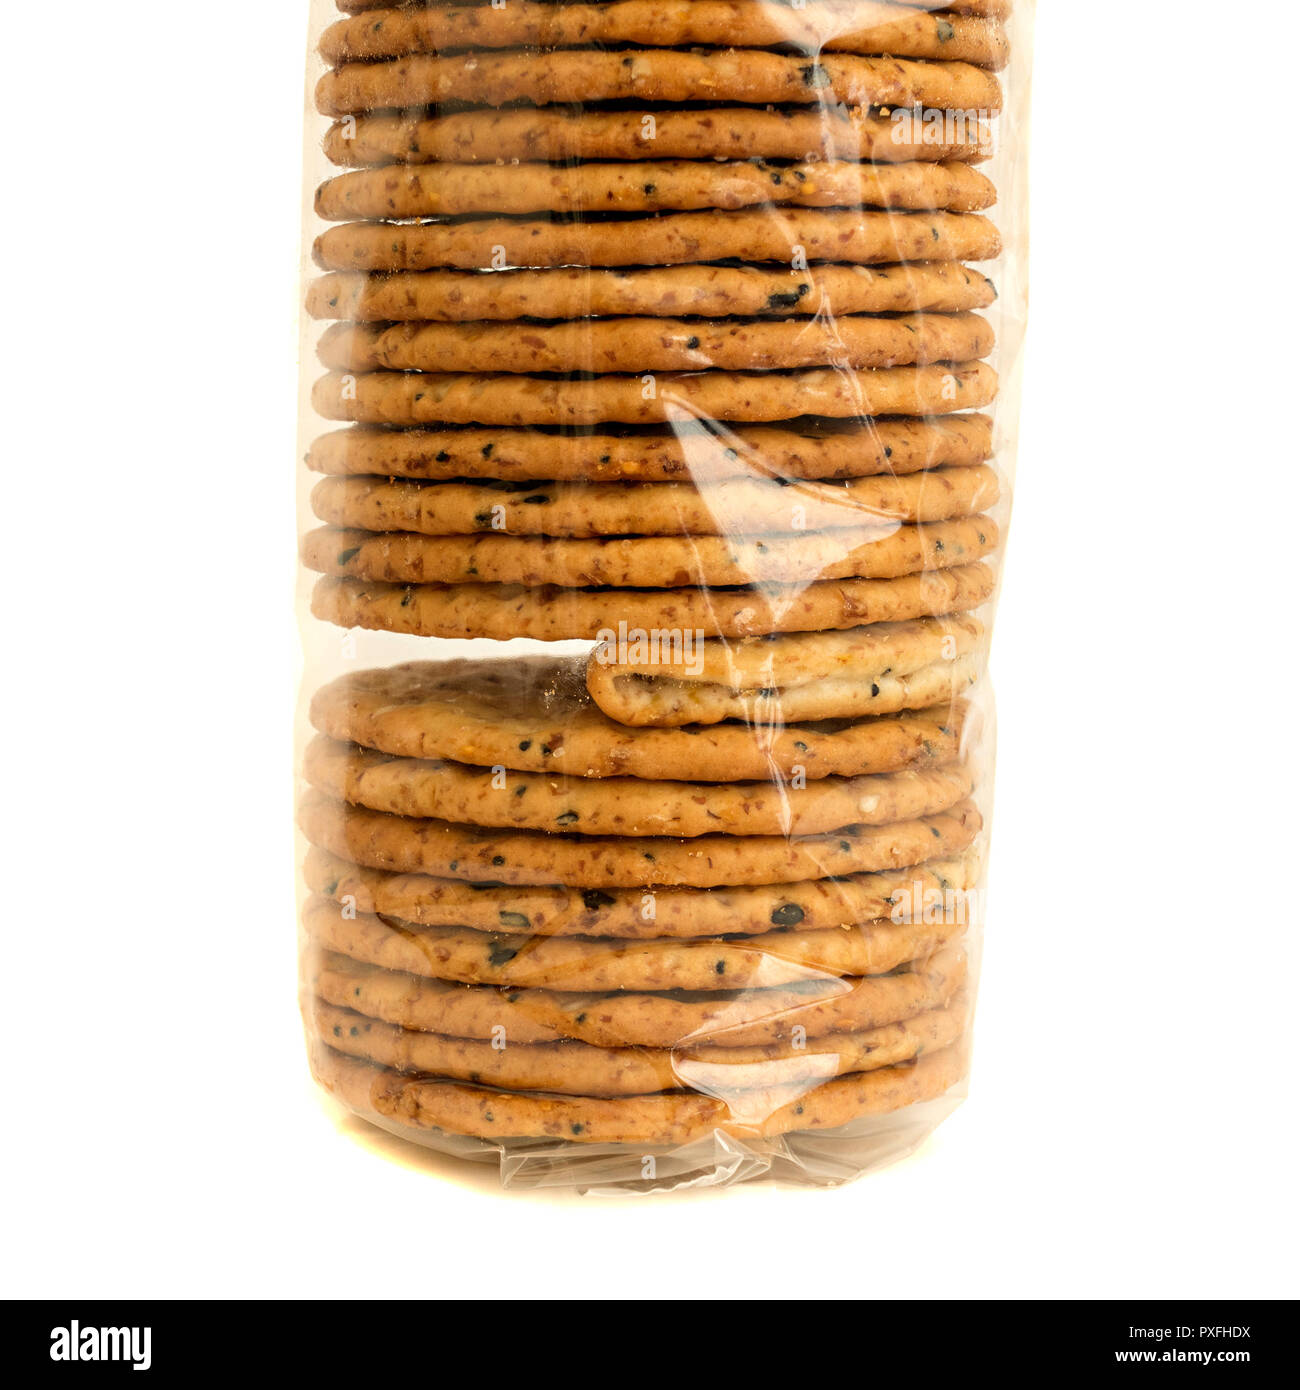 'L'Intrus' un paquet de biscuits emballés sous cellophane claire avec un cracker pliée défectueux illustrant un problème ou d'échec dans le contrôle de la qualité. Banque D'Images